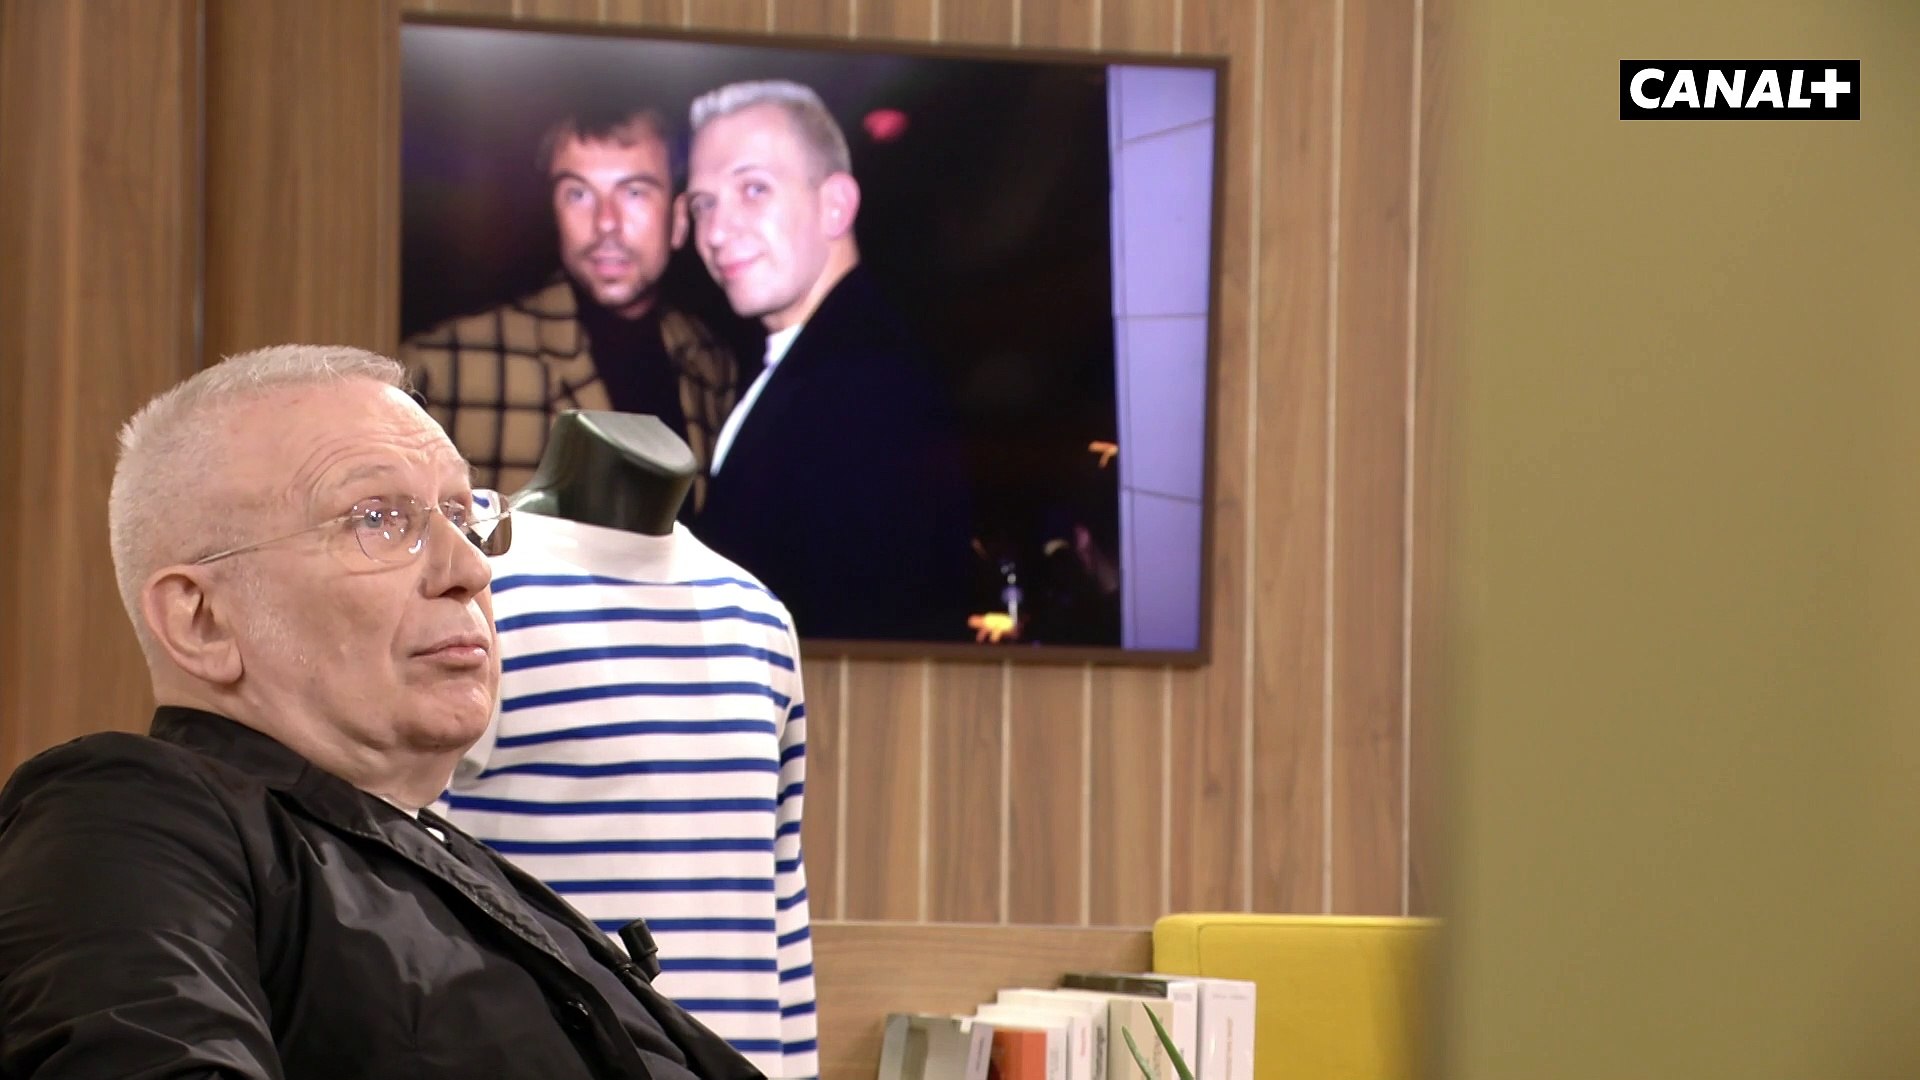 La réaction de J-P Gaultier à la mort de Thierry Mugler - En Aparté -  CANAL+ - Vidéo Dailymotion